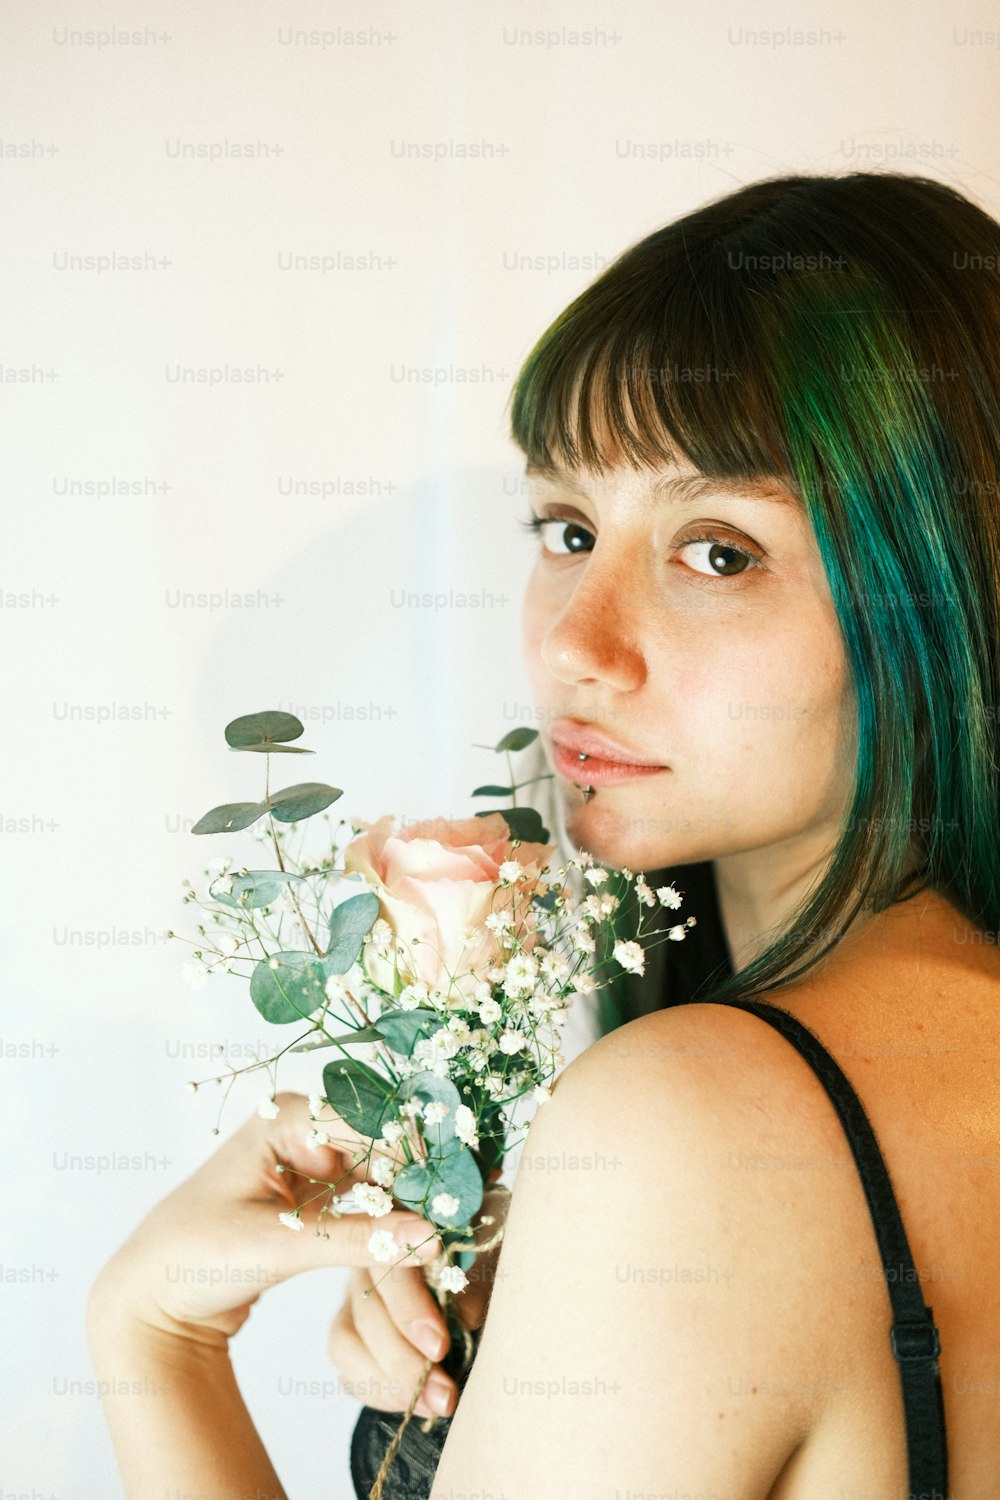 una donna con i capelli verdi che tiene un mazzo di fiori